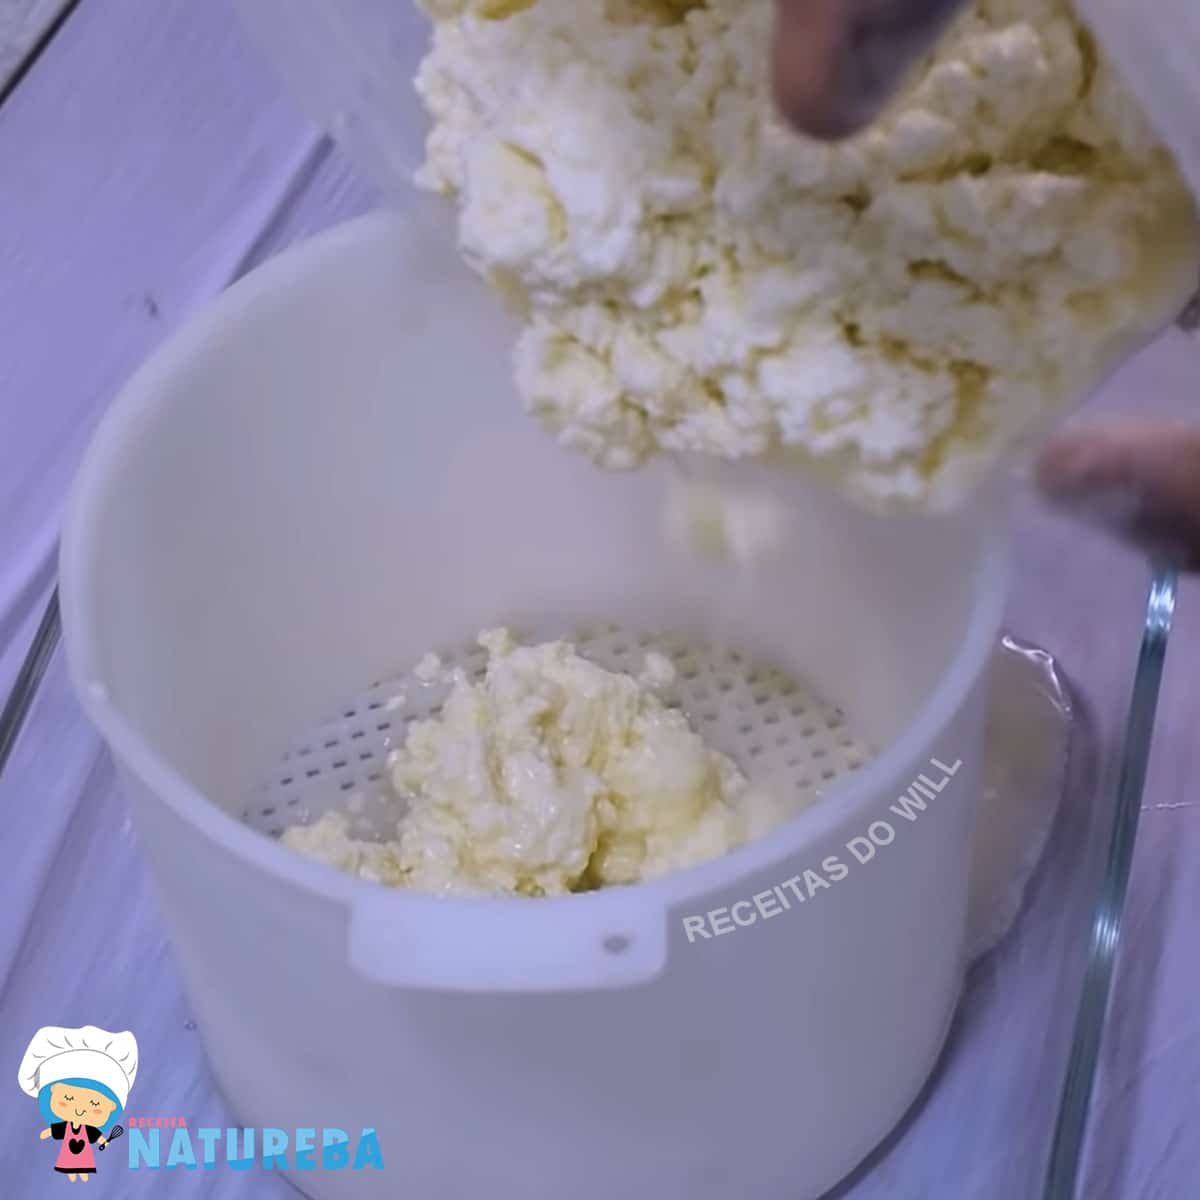 colocando a massa na forma de queijo